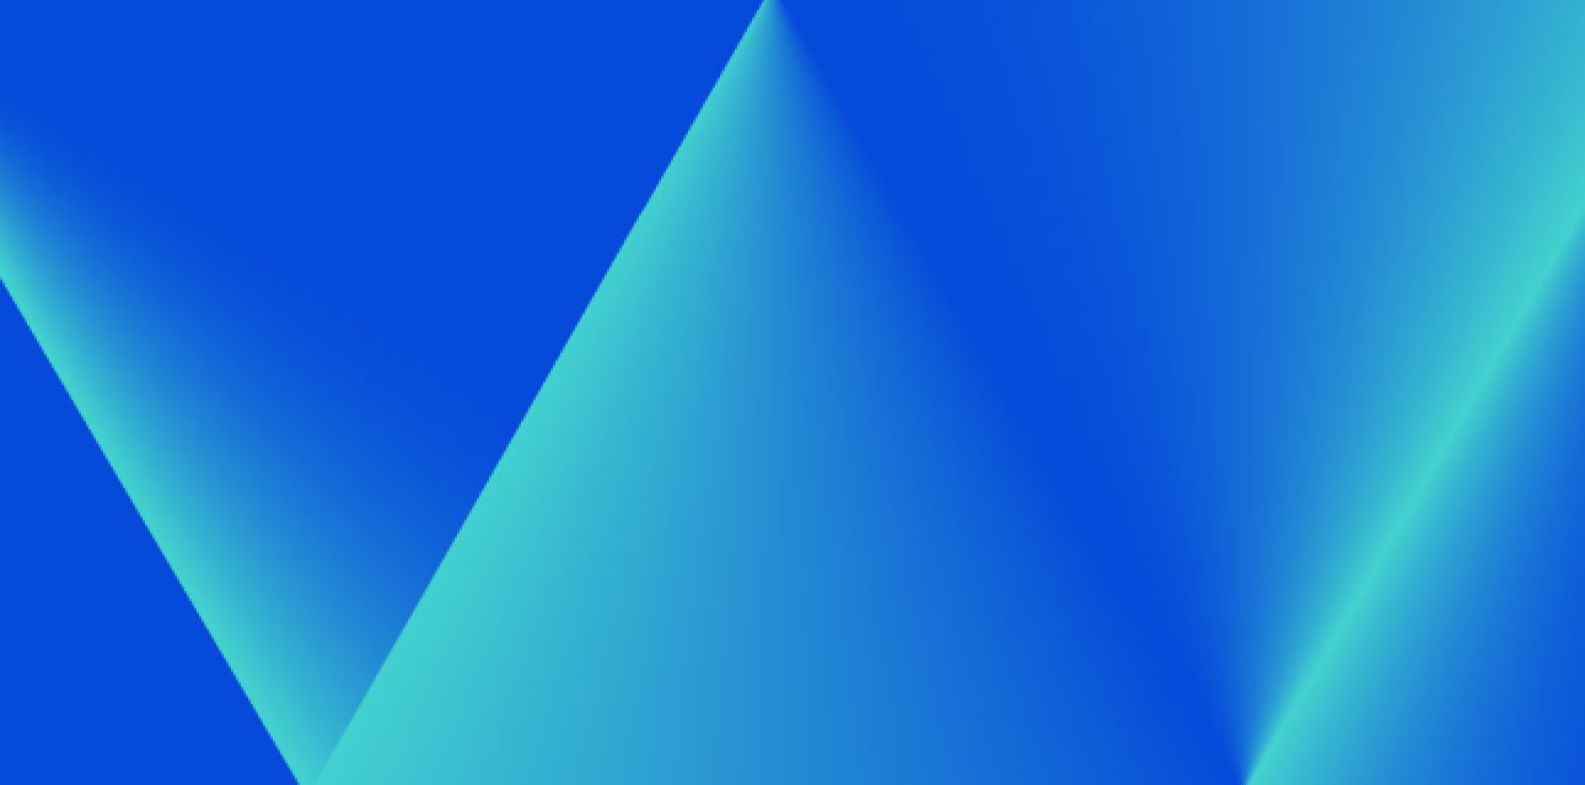 청록색 삼각형이 있는 파란색 배경